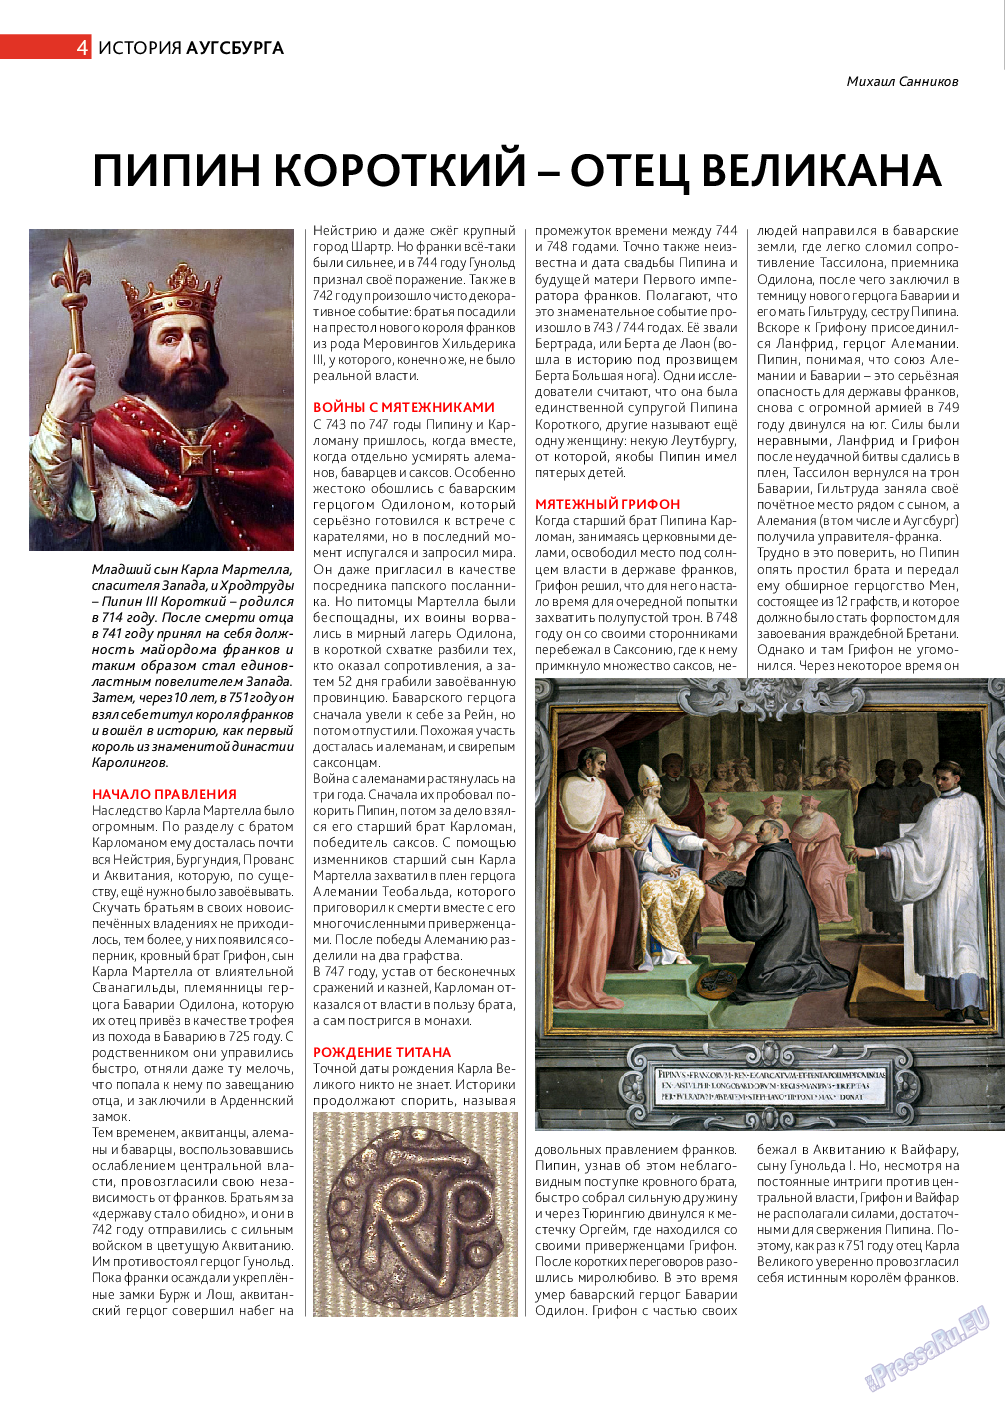 Афиша Augsburg (журнал). 2014 год, номер 8, стр. 4